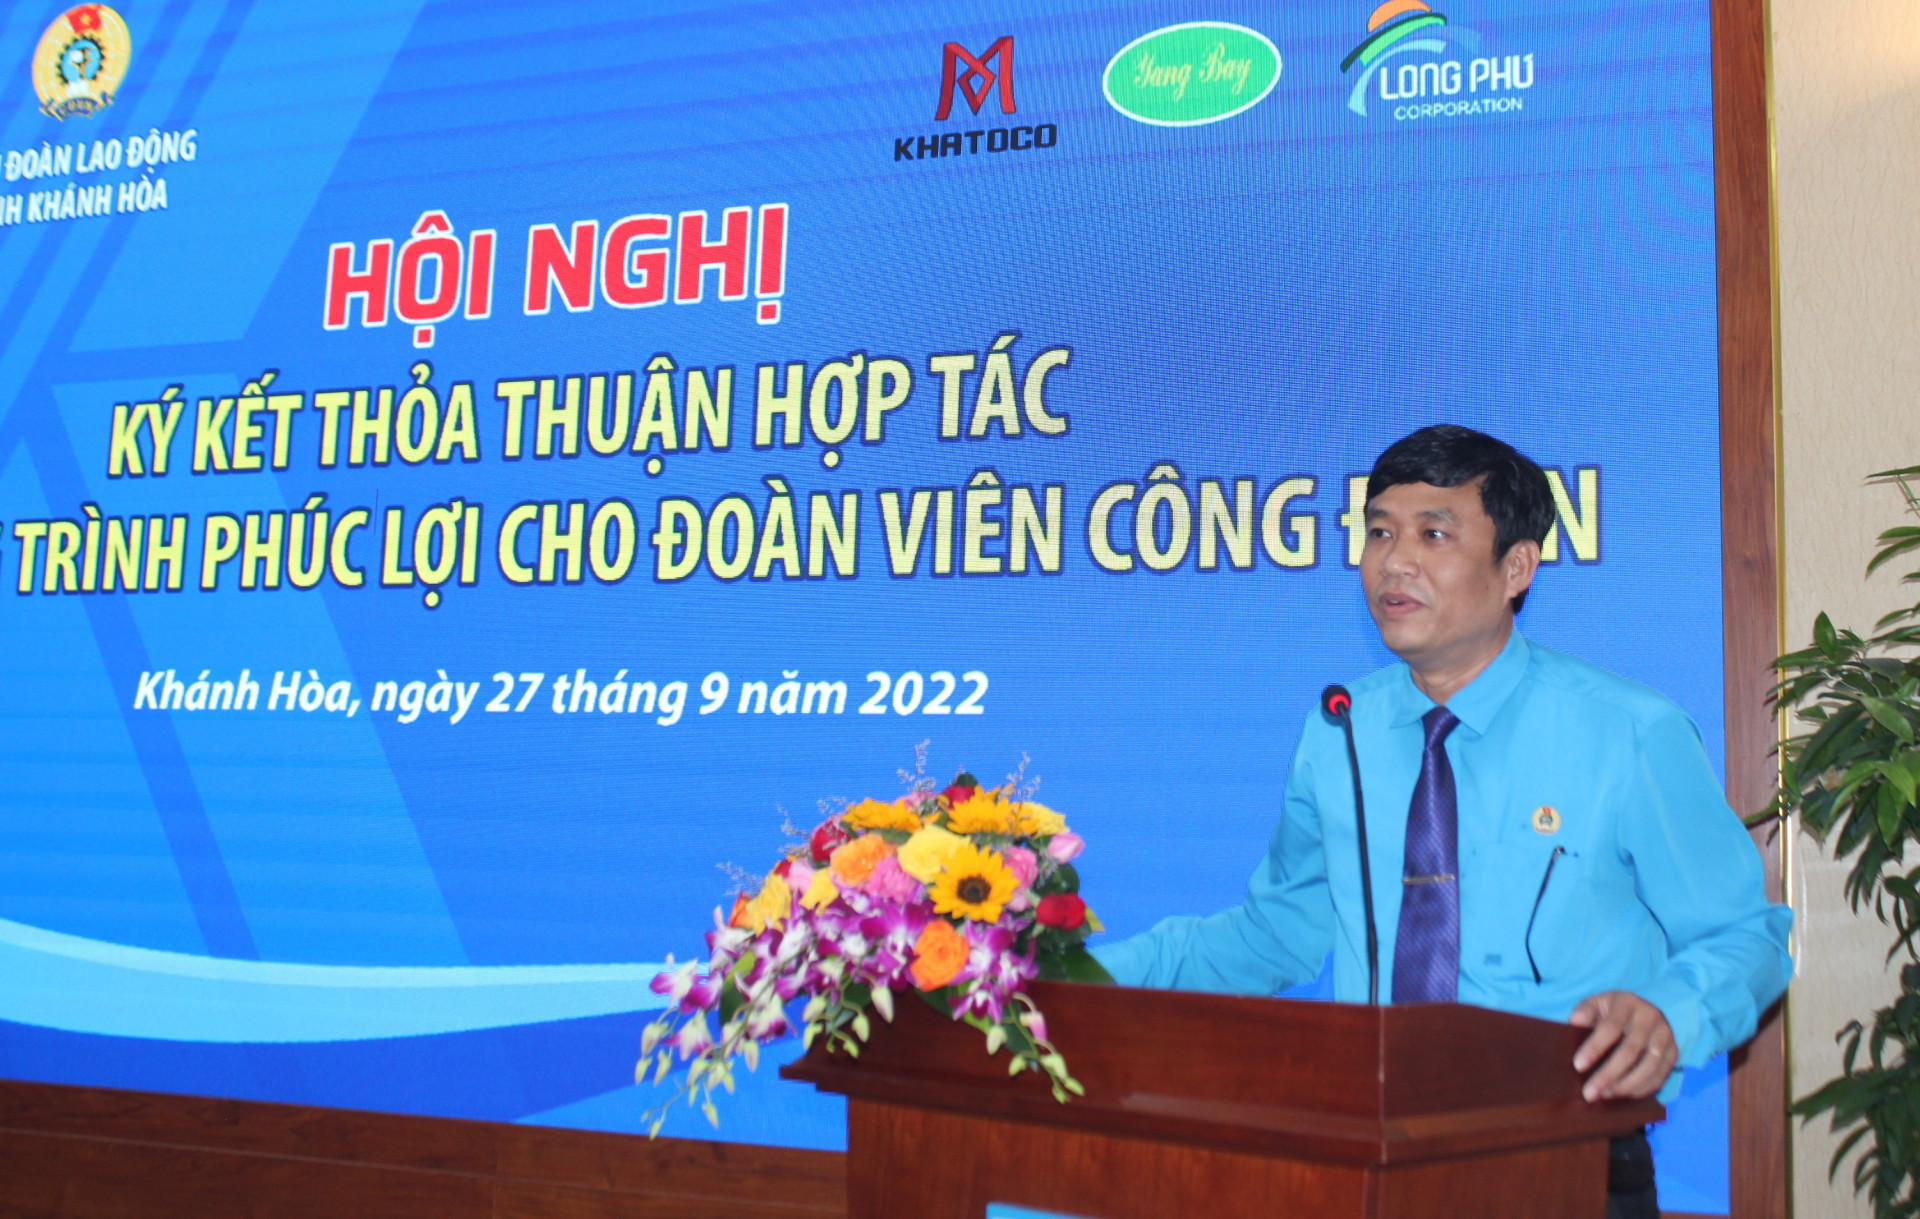 Ông Bùi Thanh Bình - Chủ tịch Liên đoàn Lao động Khánh Hòa phát biểu tại buổi lễ.